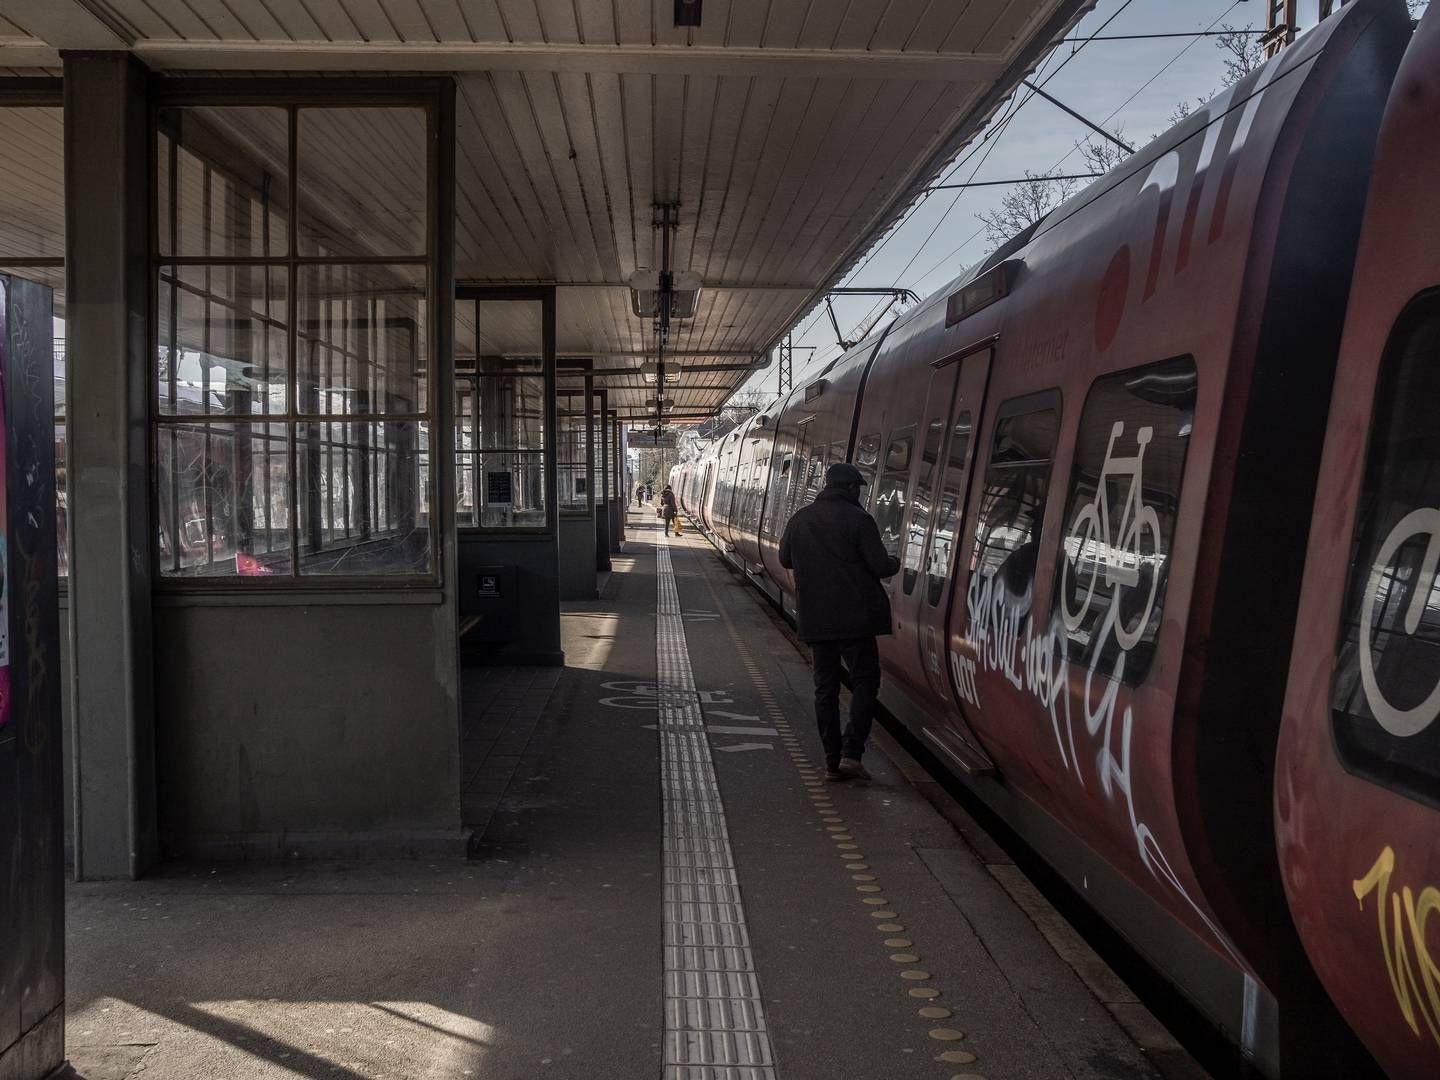 Mere DSB-personale i S-togene kan være med til at skabe højere tryghed for de rejsende, mener Dansk Jernbaneforbund. | Foto: Aleksander Klug/Ritzau Scanpix